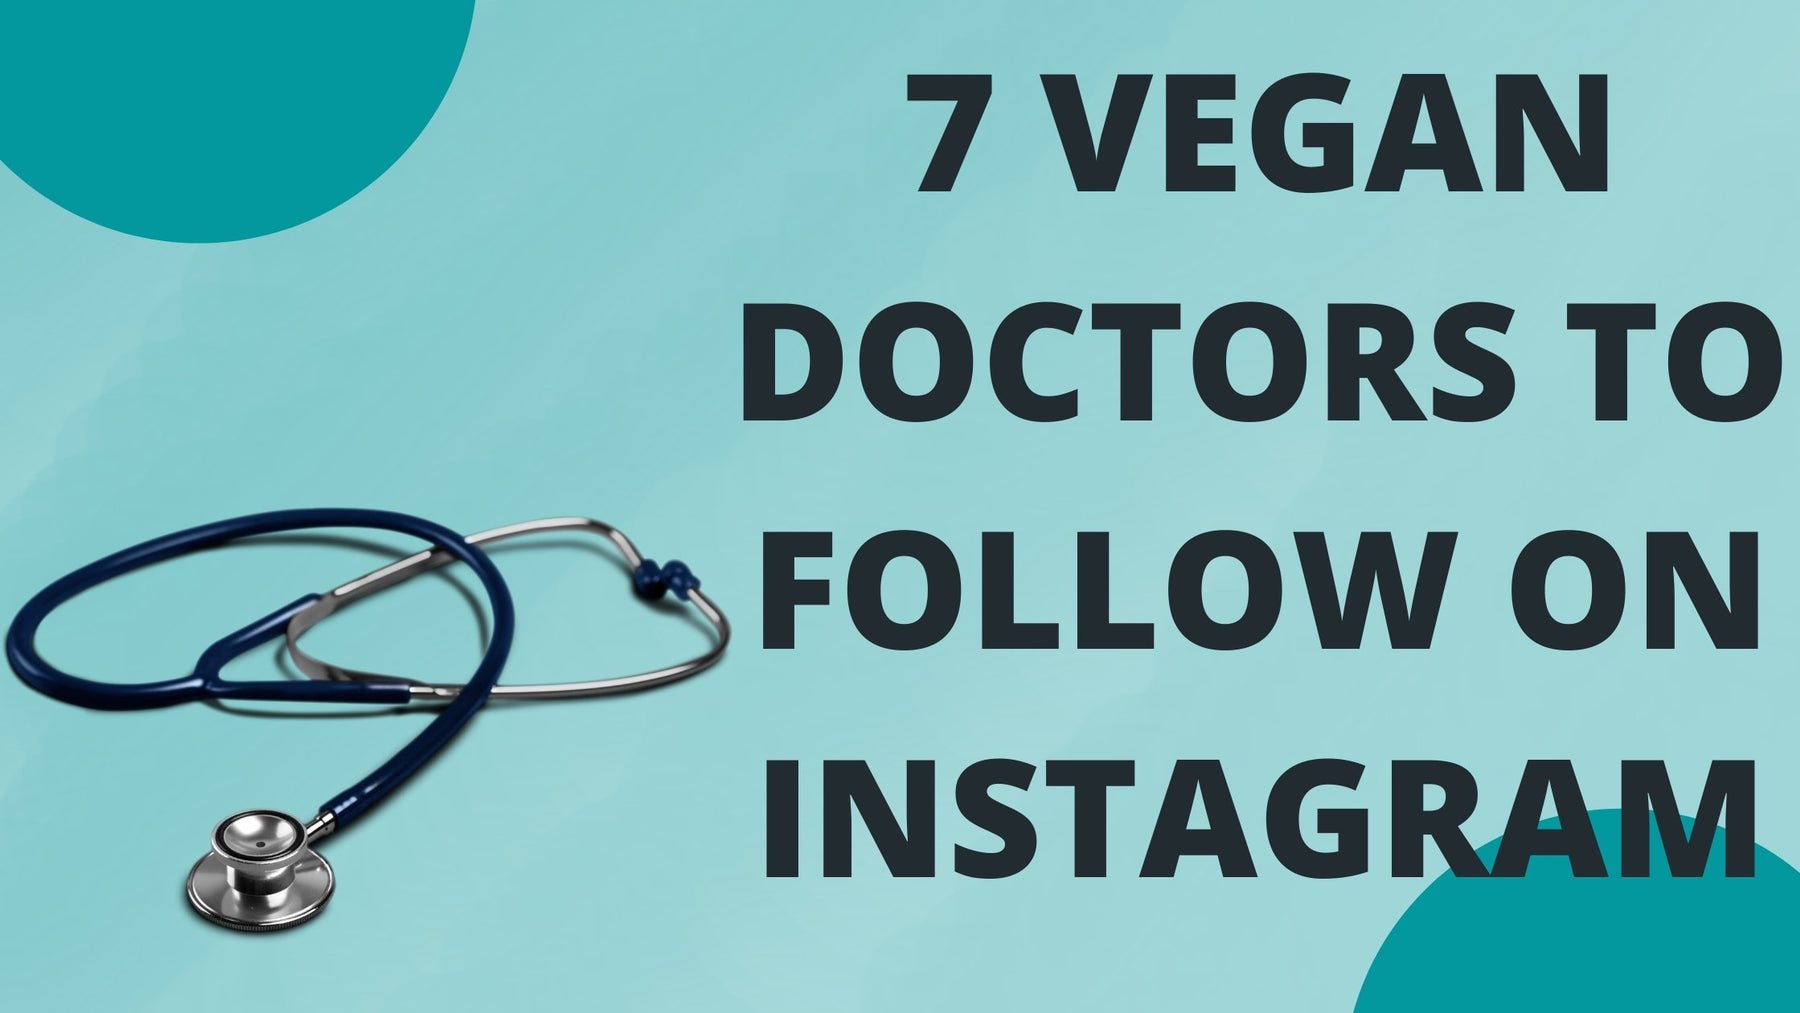 Seven vegan doctors to follow on Instagram - Roshni Sanghvi